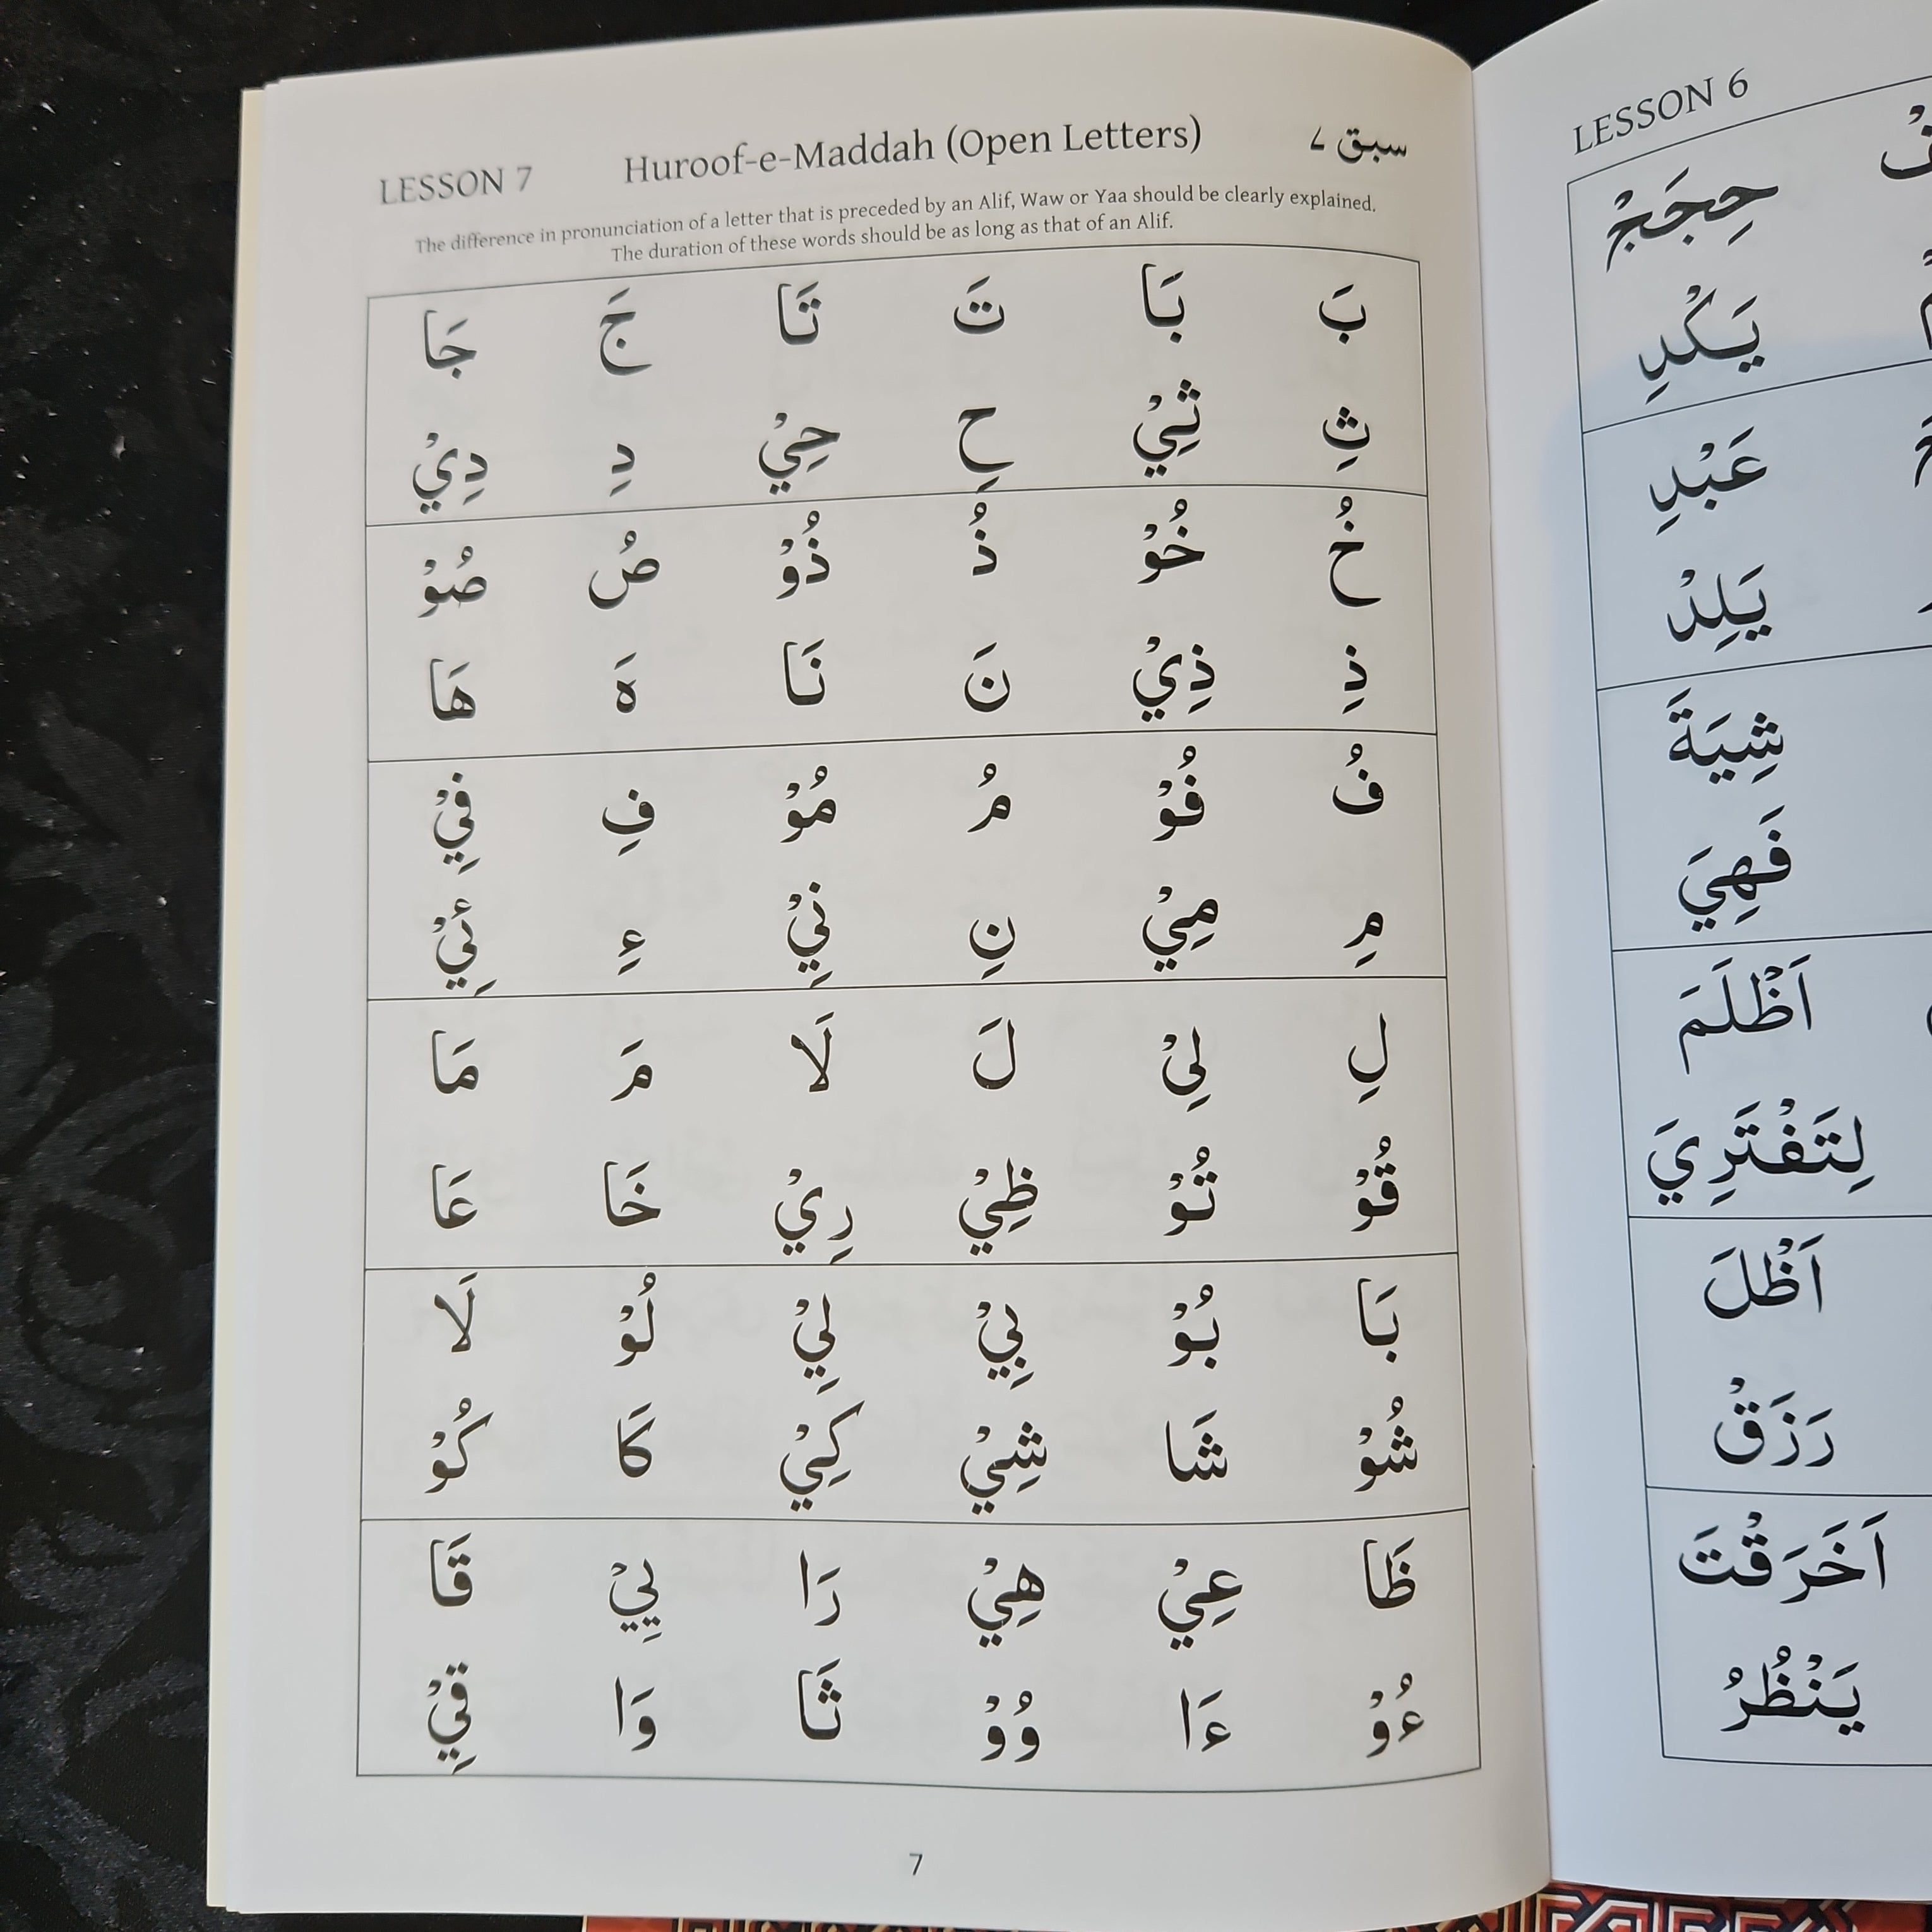 Yassarnal Koraan